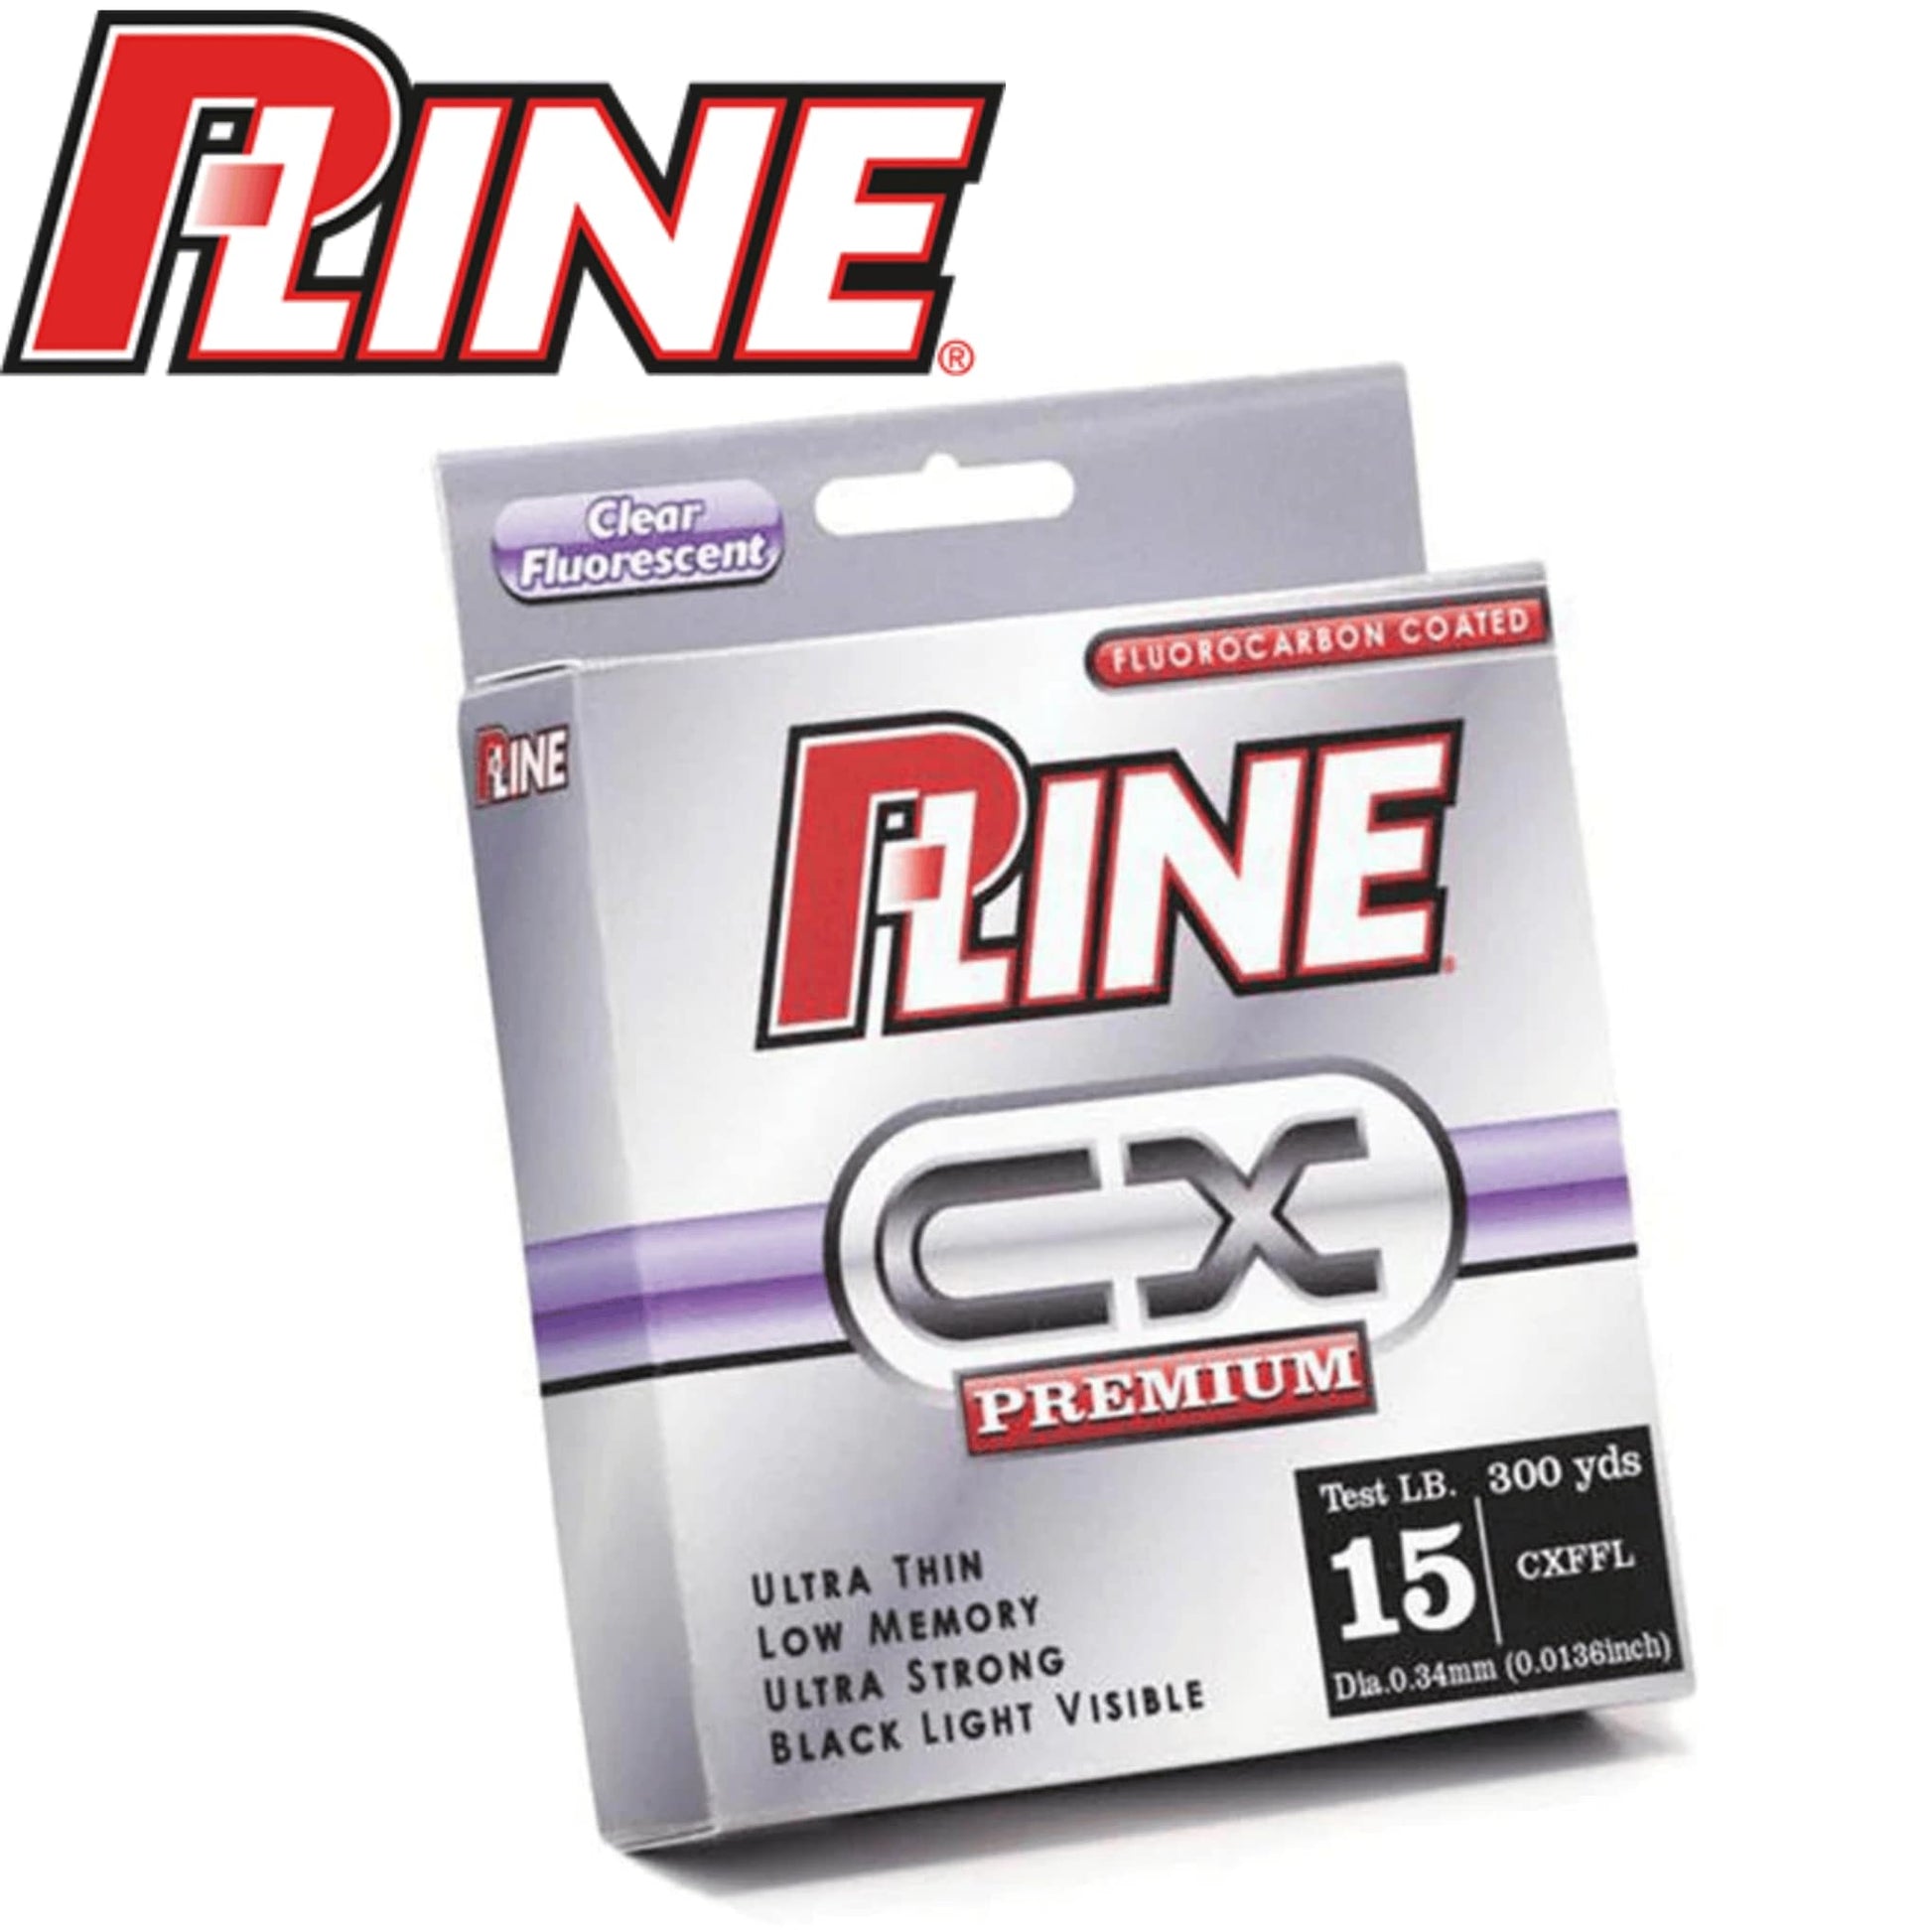 P-Line CX Premium Fluorocarbon CoPolymer – Fat Catch